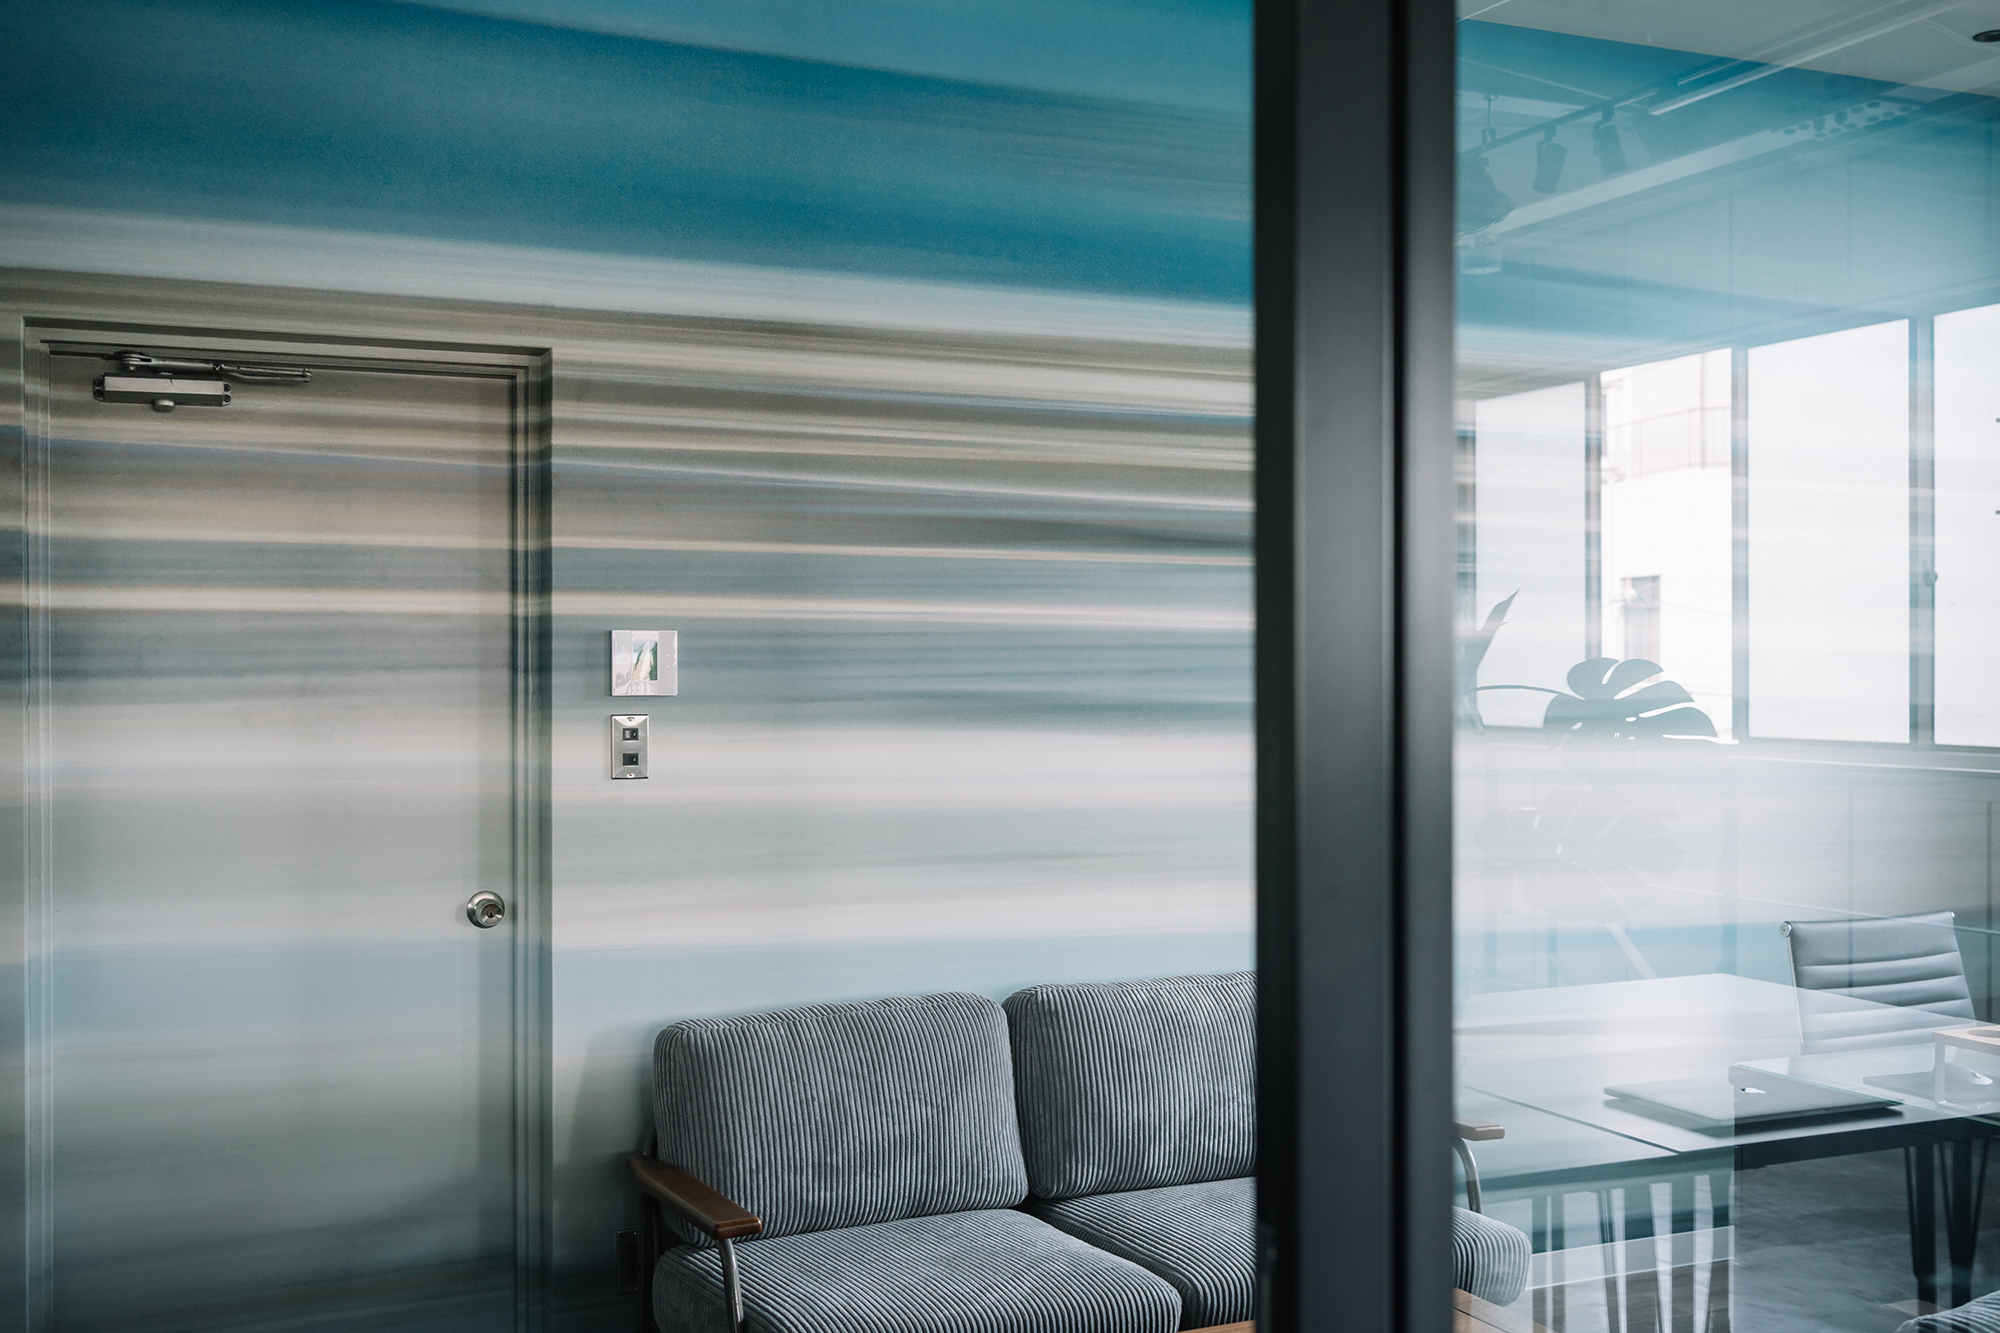 大阪府大阪市のオフィス壁面とドアを、さまざまなブルーの横のラインがグラデーションのように流れるデザインで仕上げた